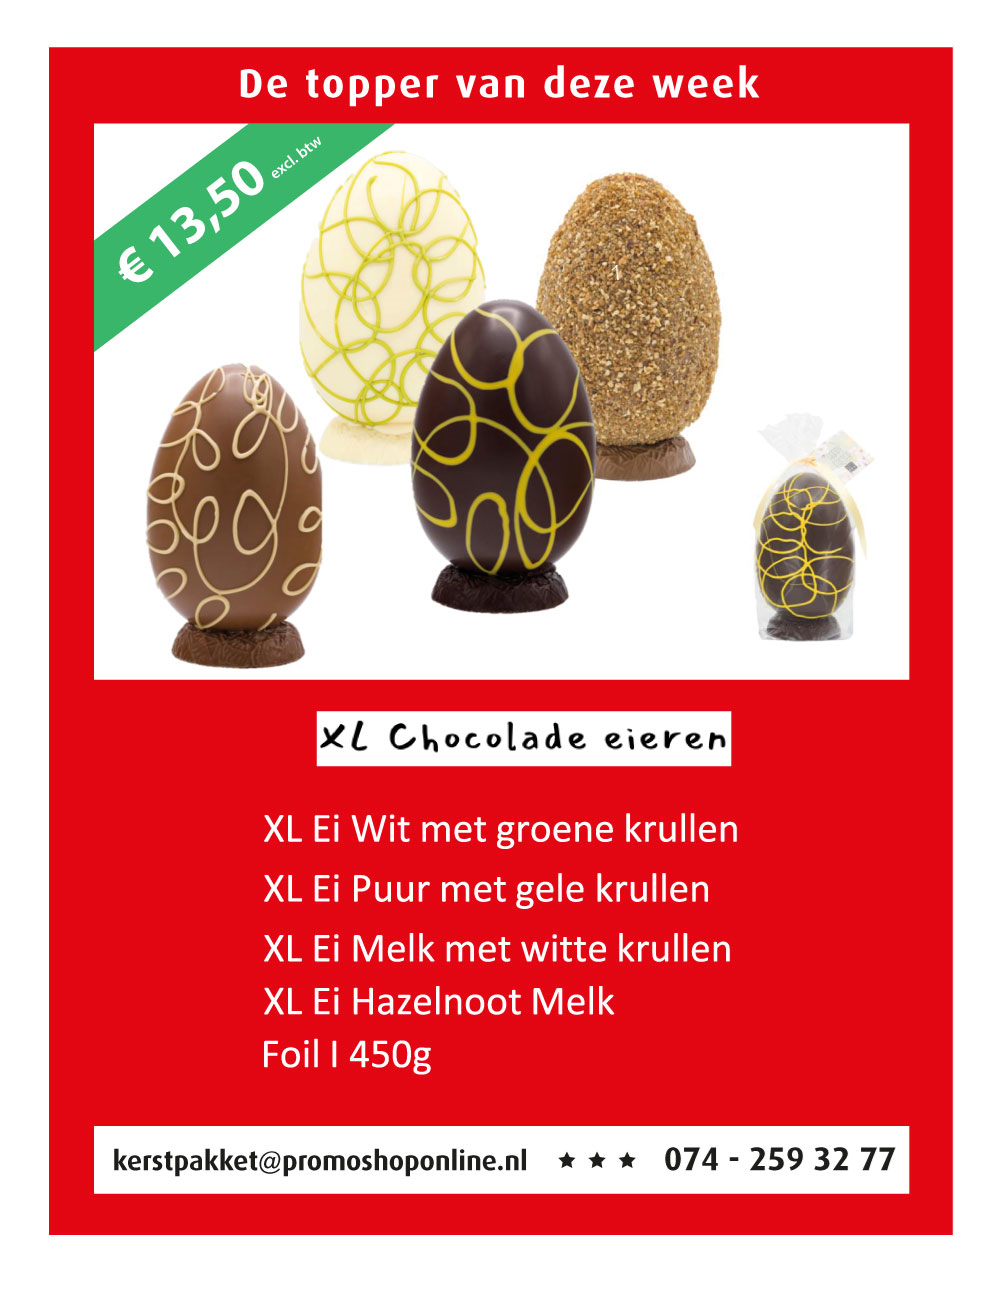 XL Chocolade eieren